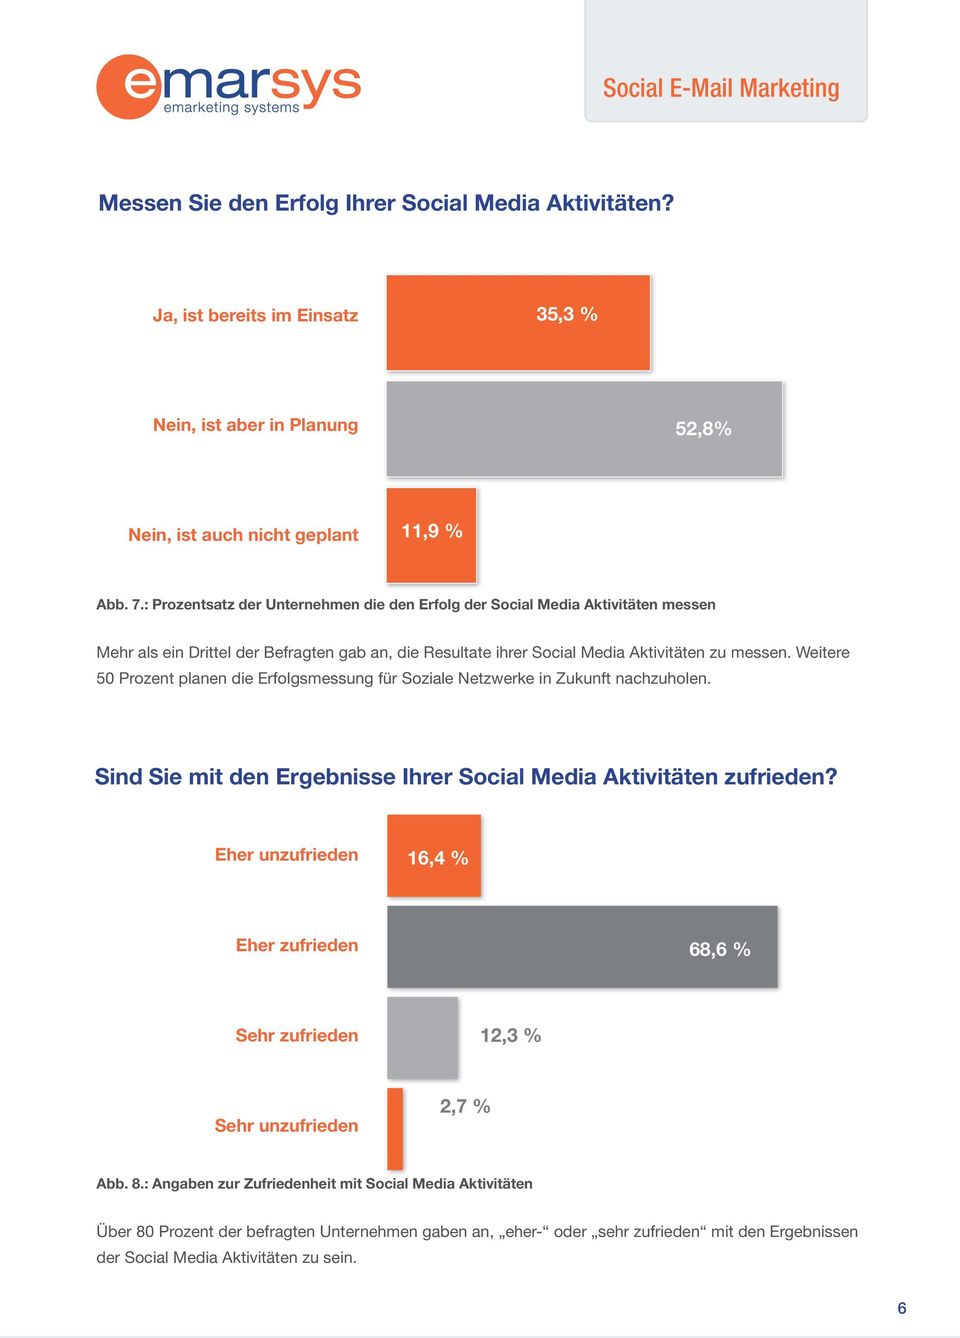 Weitere 50 Prozent planen die Erfolgsmessung für Soziale Netzwerke in Zukunft nachzuholen. Sind Sie mit den Ergebnisse Ihrer Social Media Aktivitäten zufrieden?